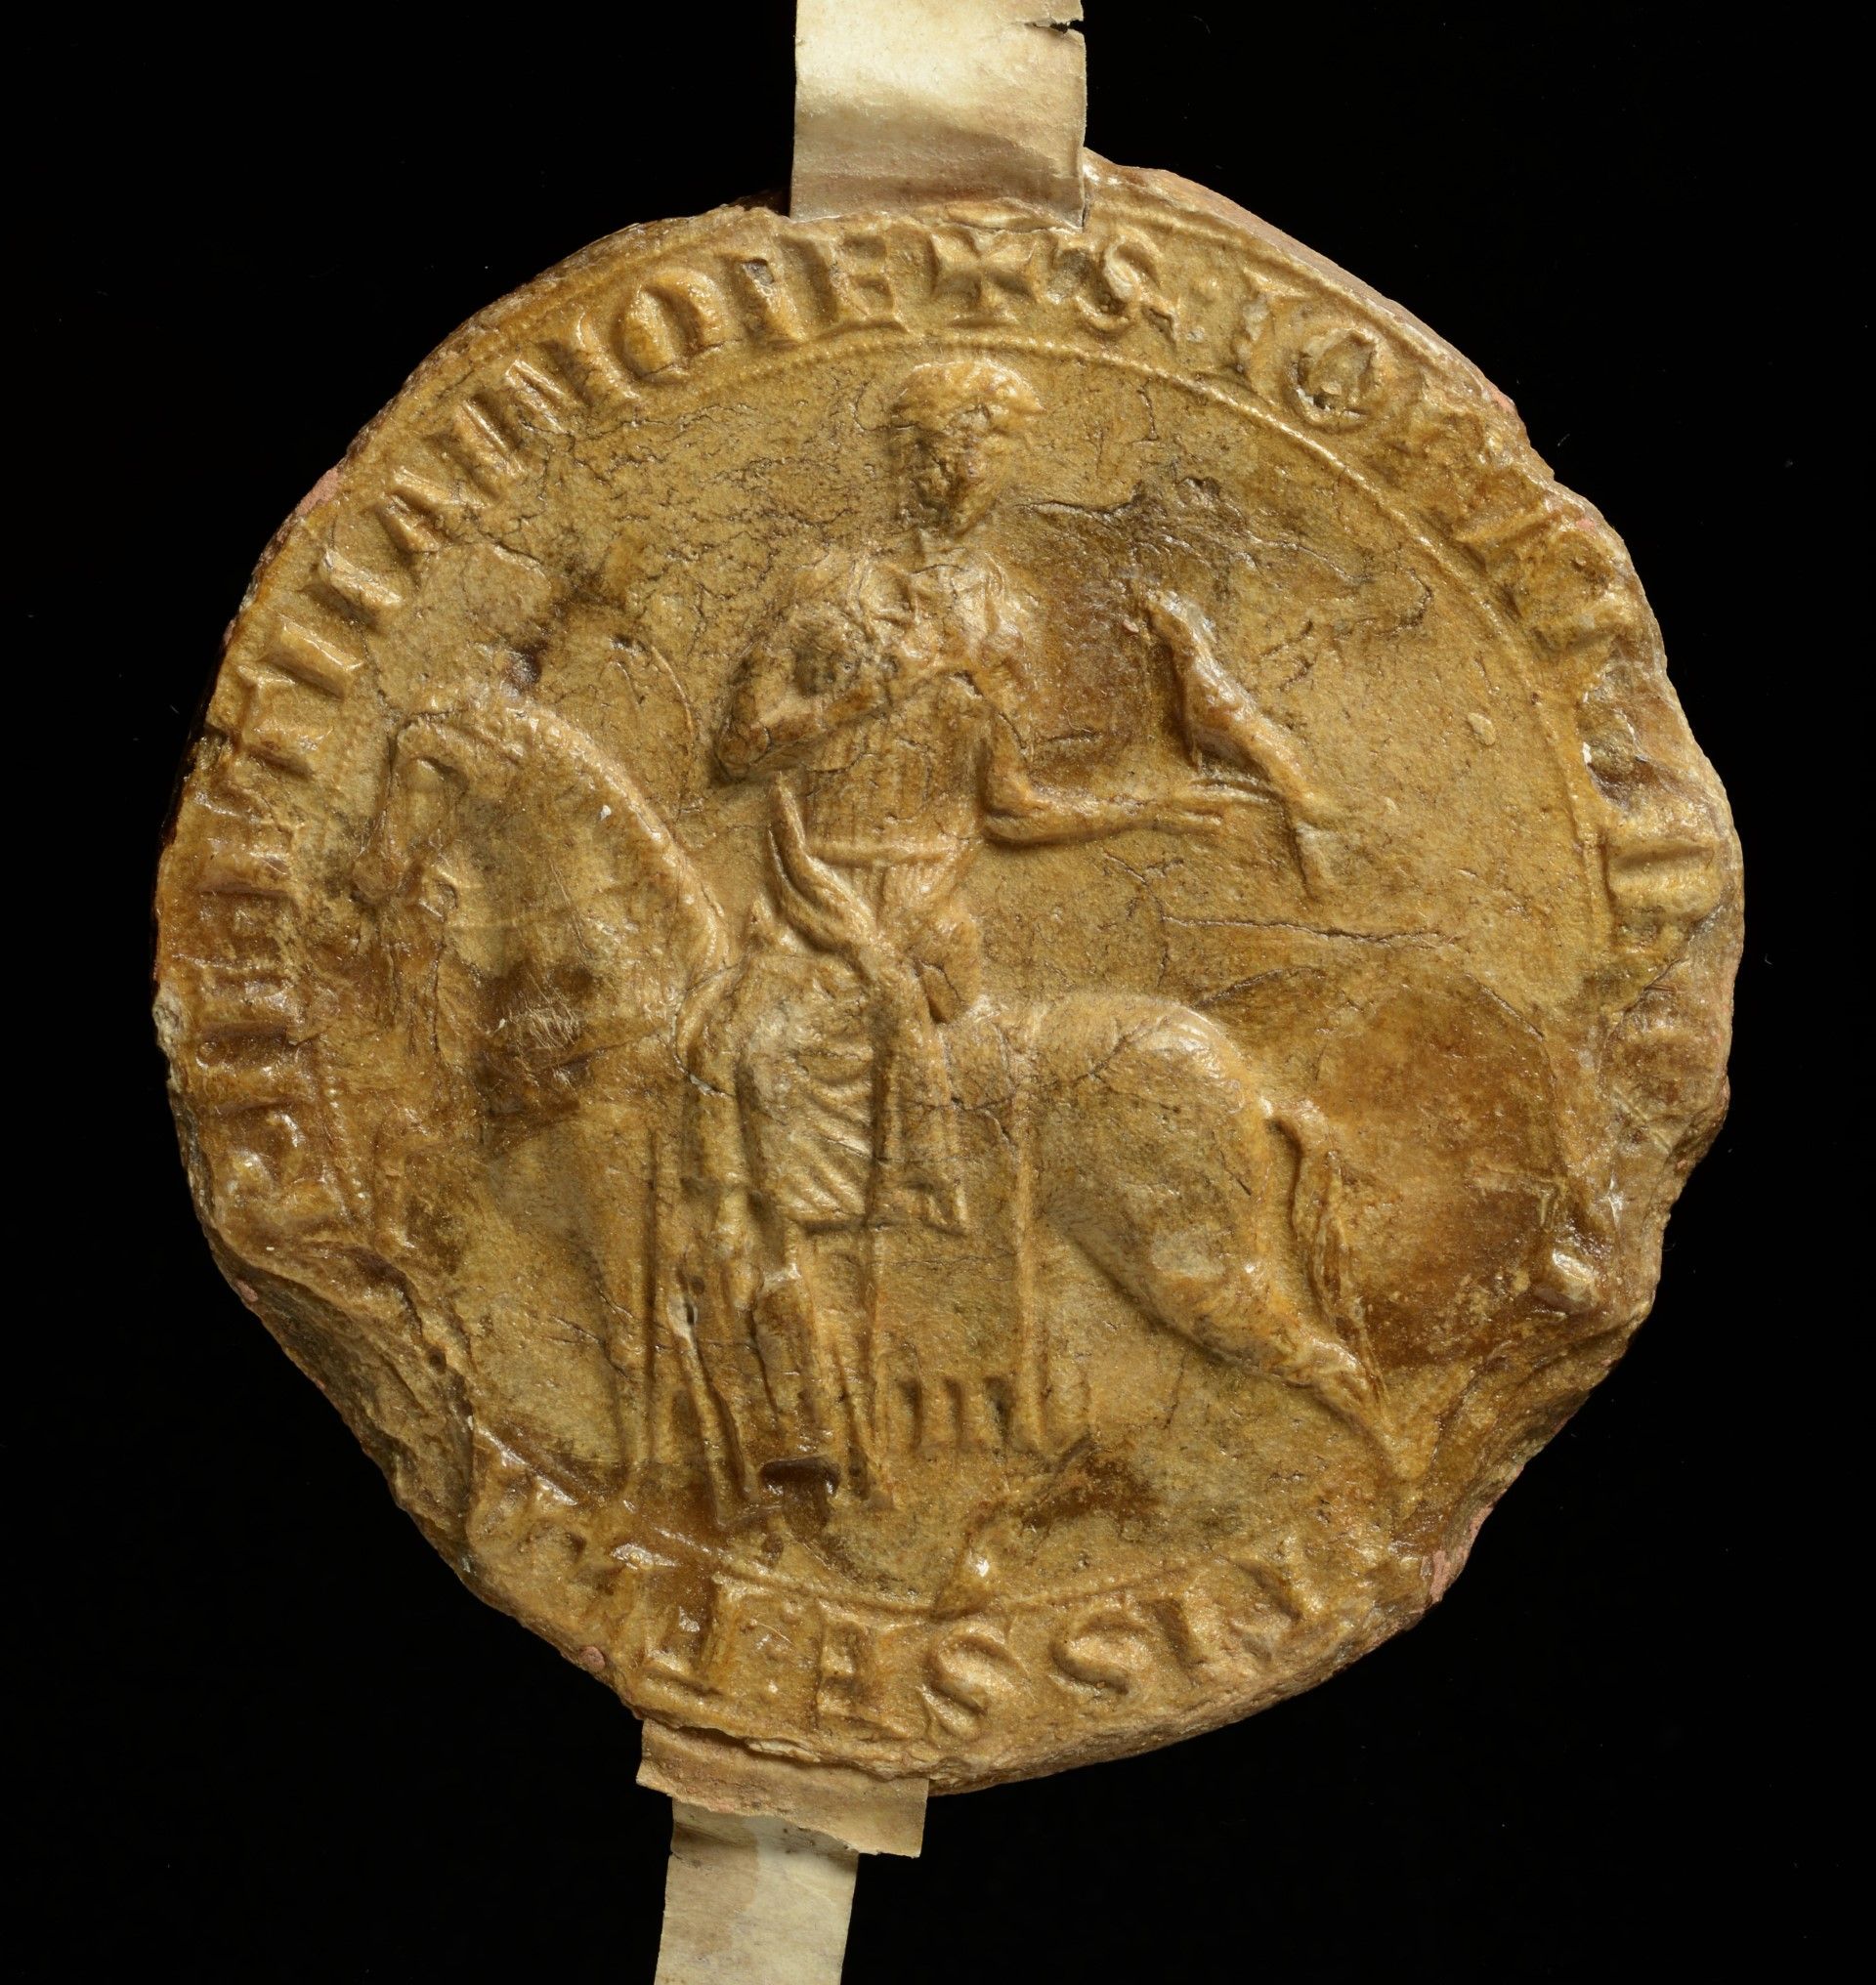 Un grand sceau équestre de chasse de Jeanne de Constantinople avec un faucon sur
le poing (sceau appendu à une charte de 1218, Archives de l’État à Gand, Fonds
Saint-Genois, n°12).